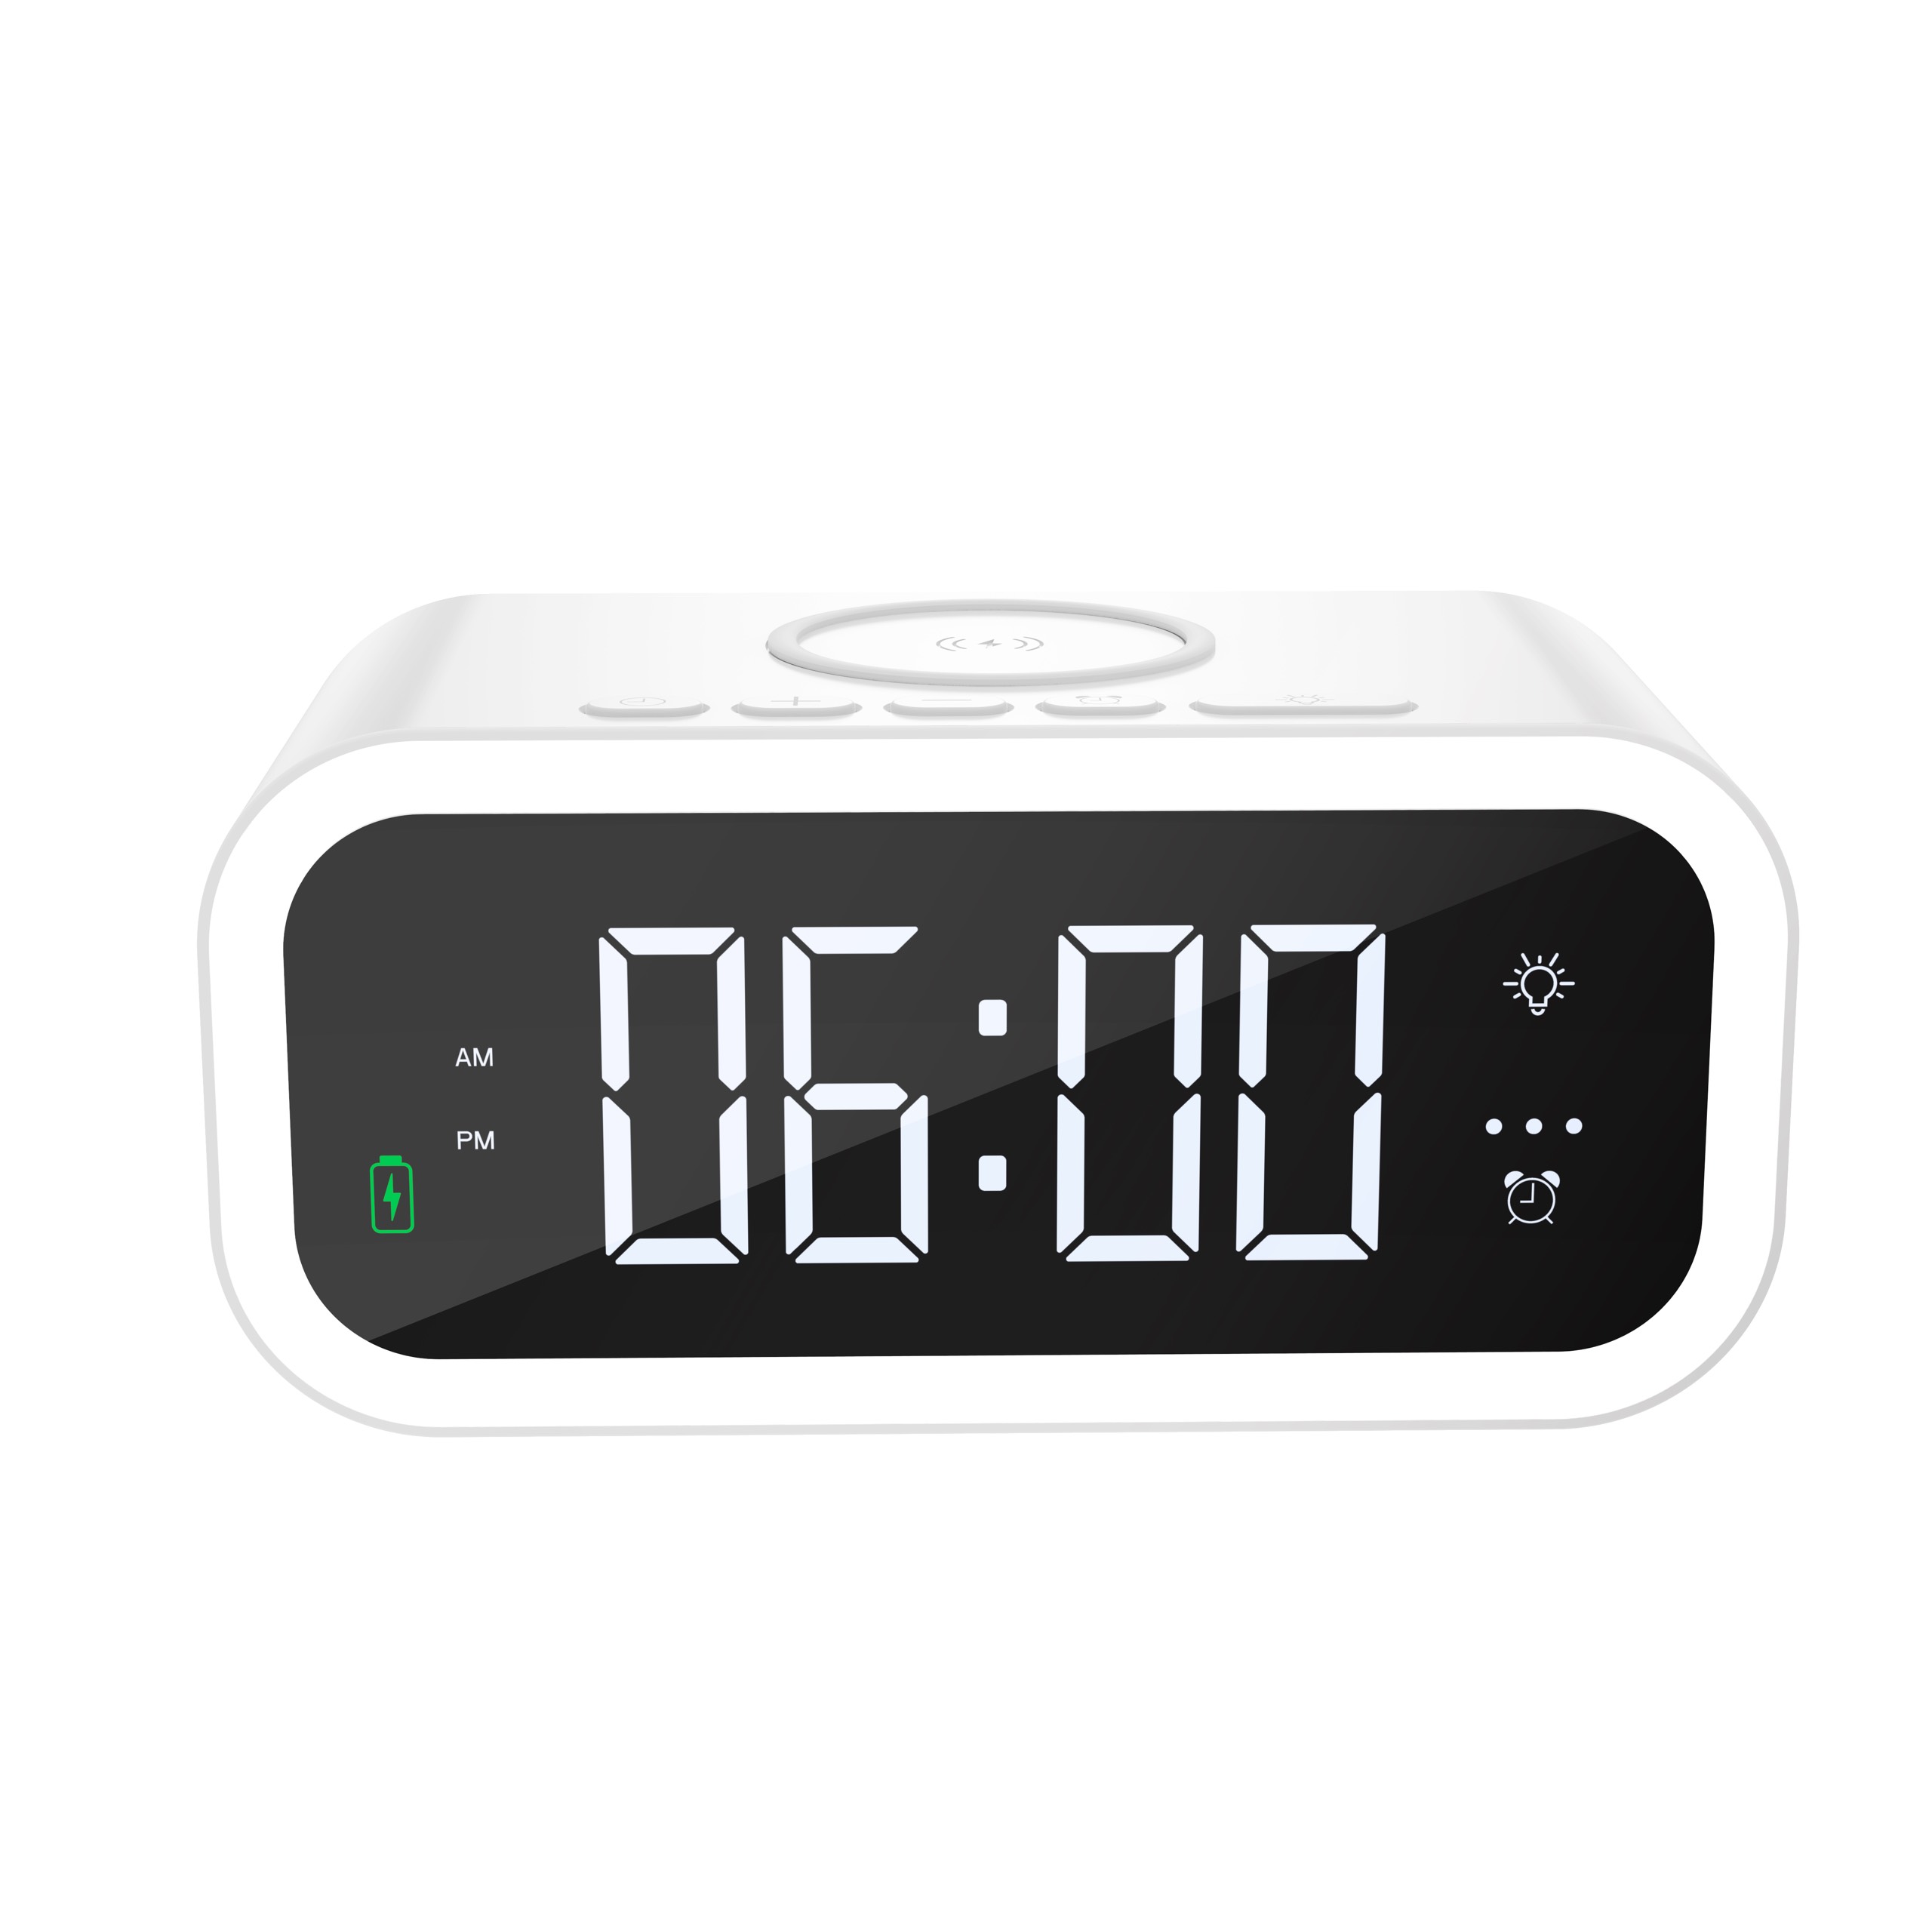 Sạc không dây kèm đồng hồ Wiwu Time Wireless Charger Wi-W015 cho các thiết bị sạc k dây, đồng hồ báo thức có thể đặt độc lập - Hàng chính hãng